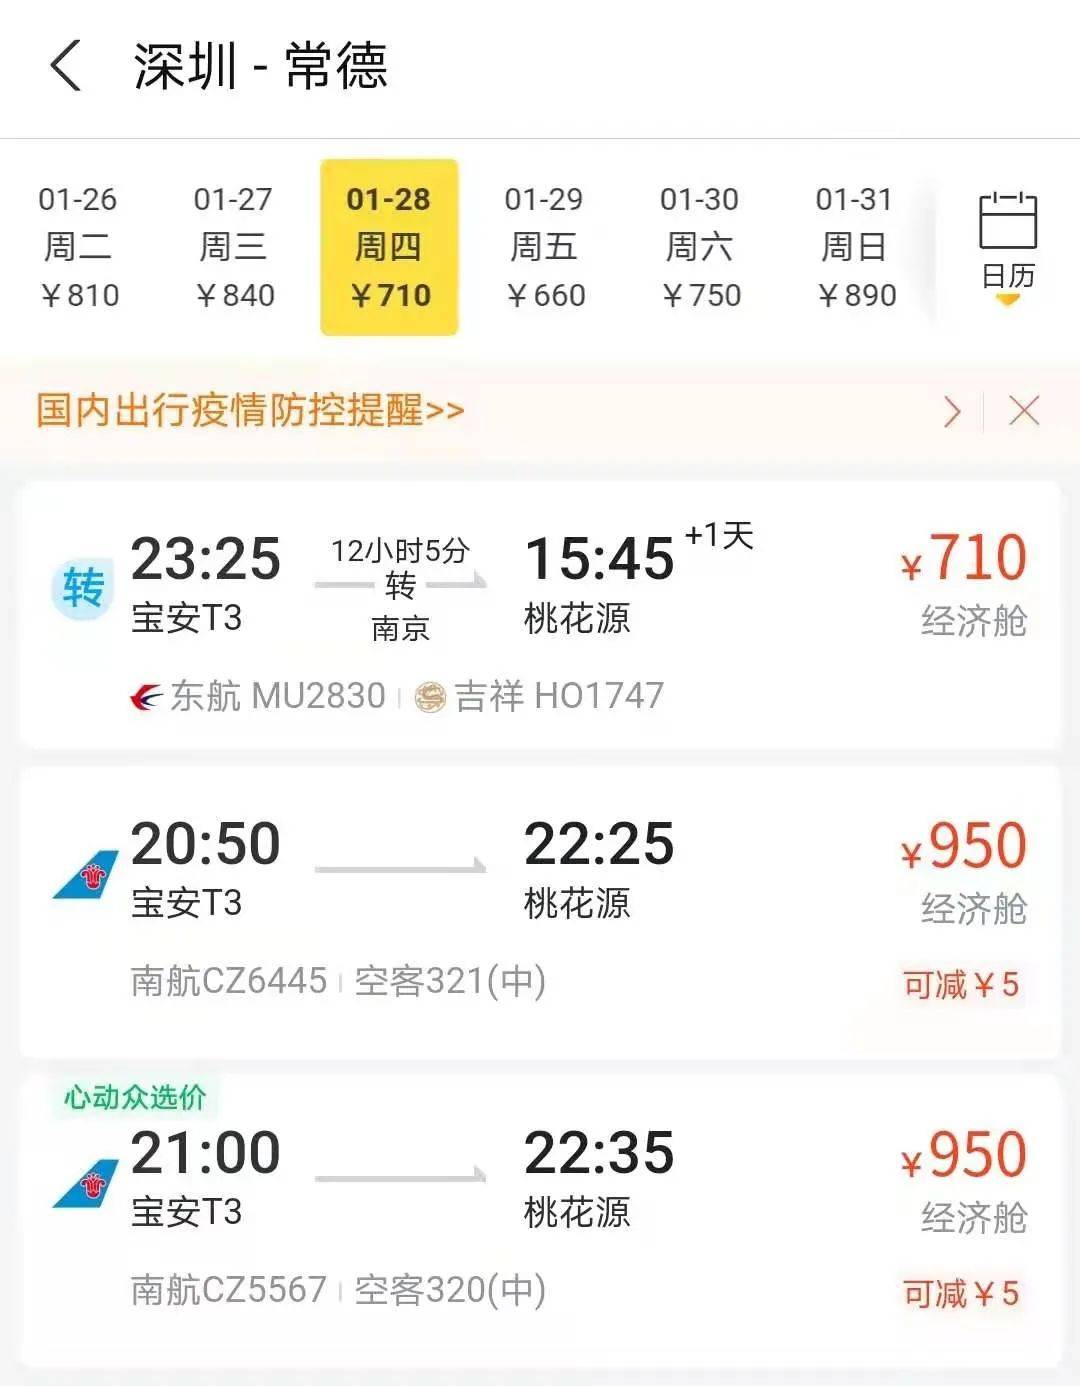 吉祥航空将开通上海-赫尔辛基首条洲际直飞长途航线_深圳新闻网